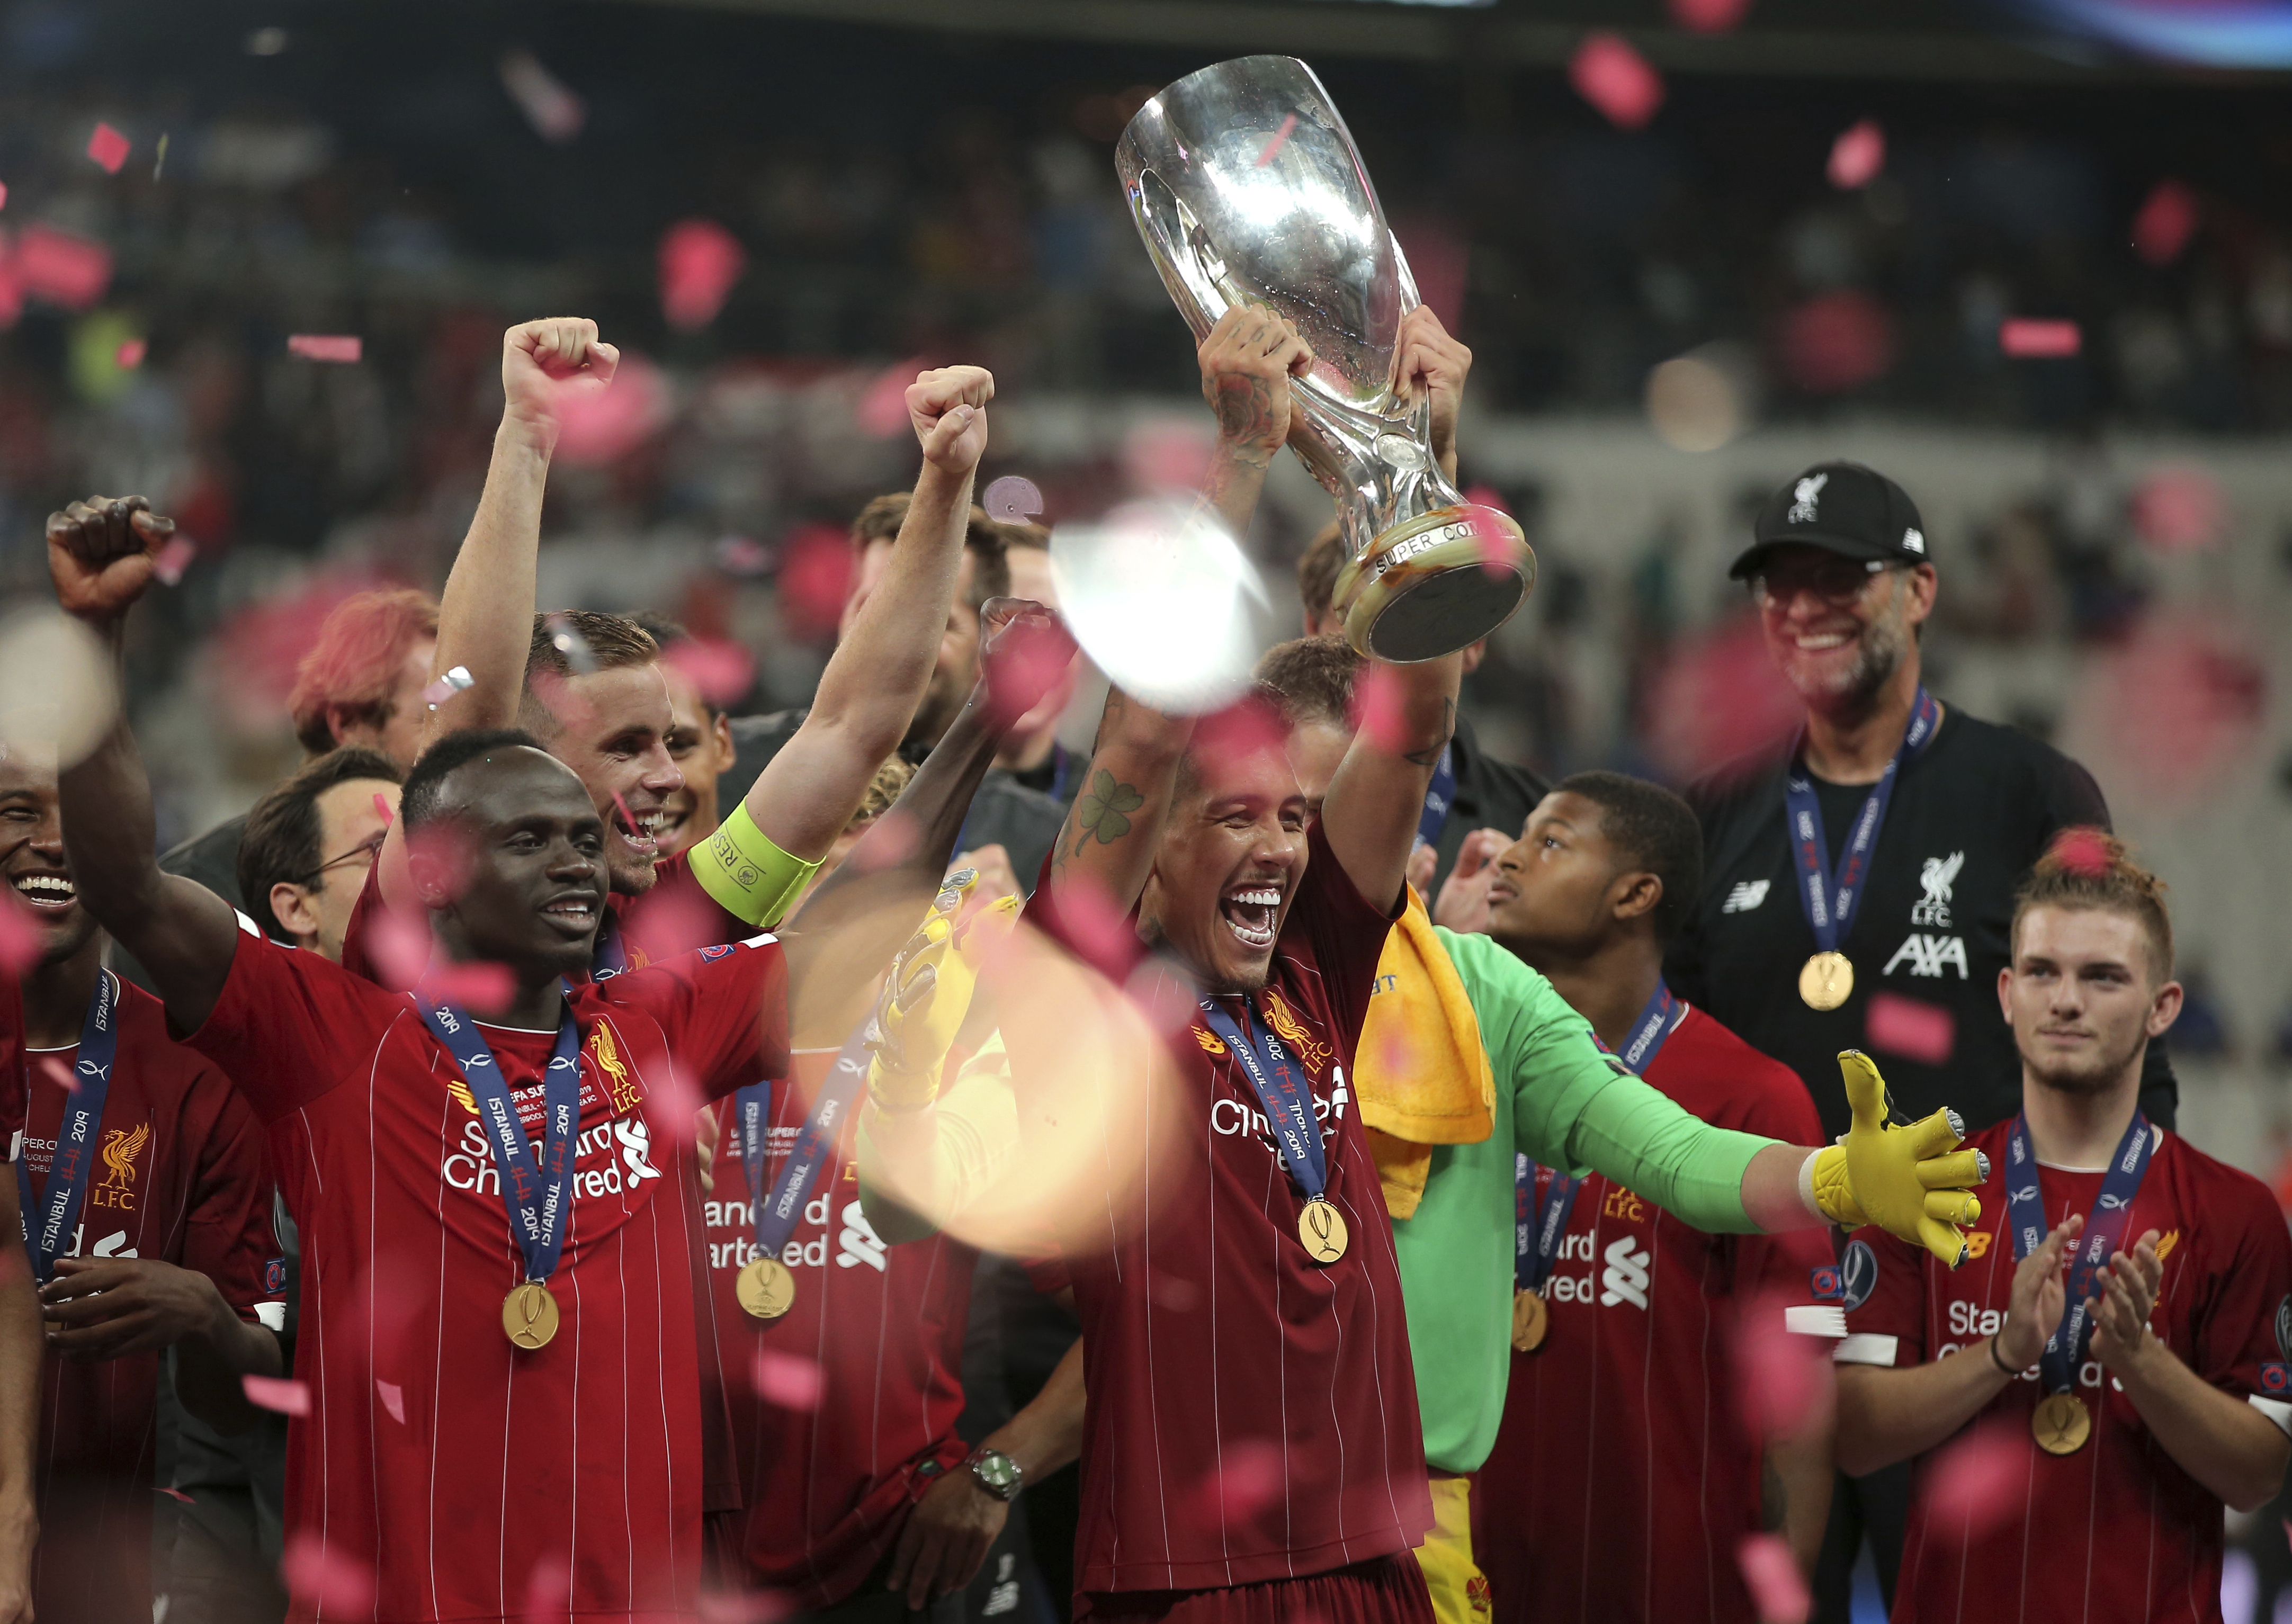 新华社/法新当日,在土耳其伊斯坦布尔举行的2019年欧洲超级杯足球赛中